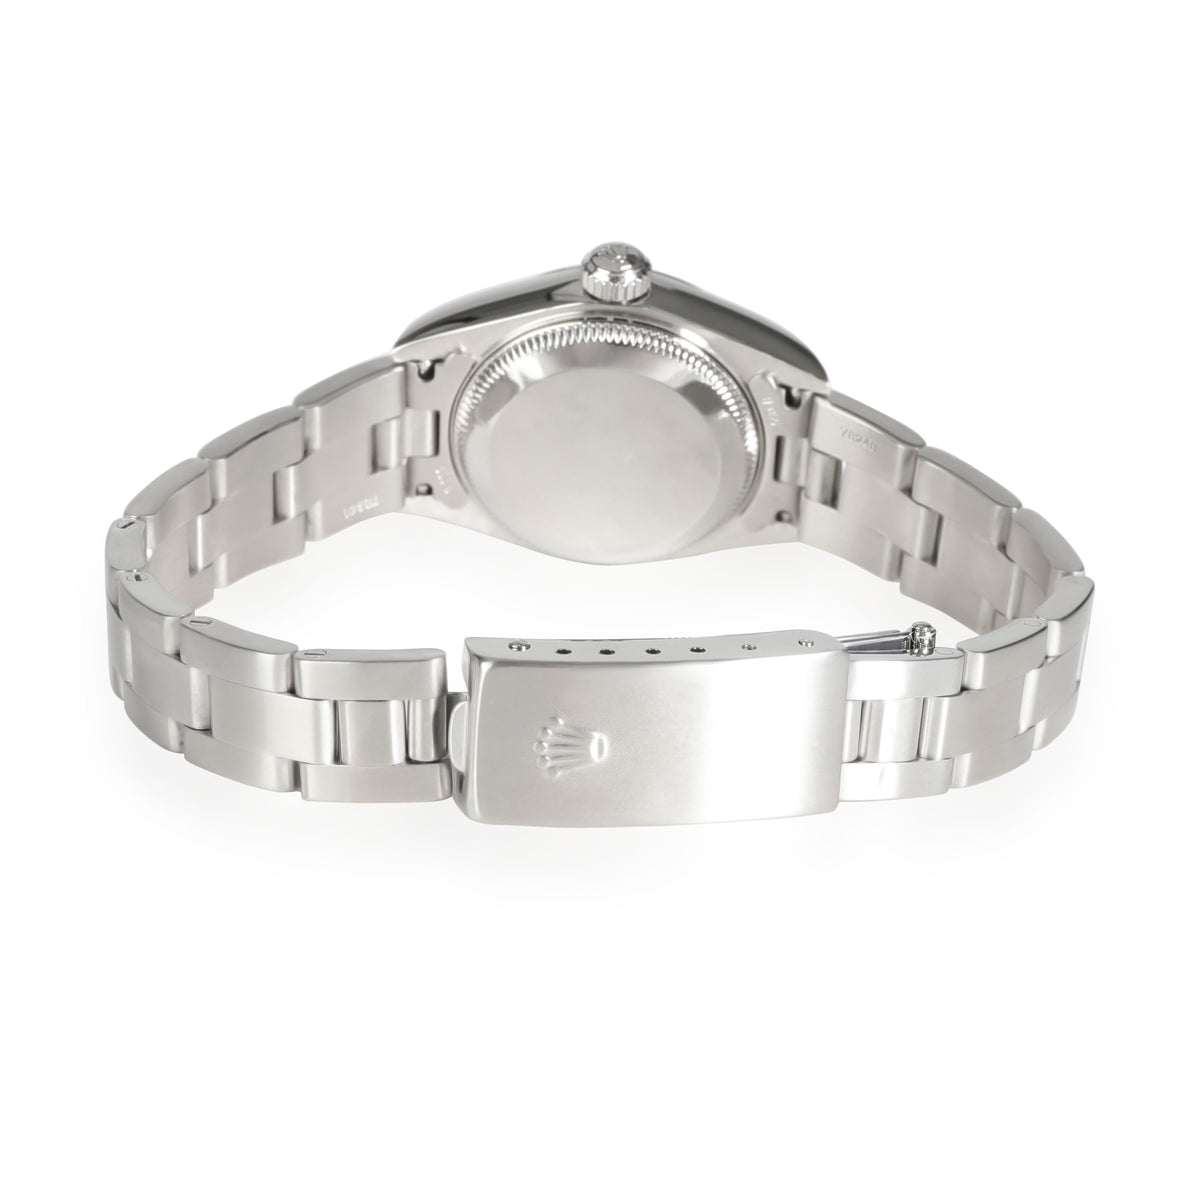 Rolex Date 79160 Women's Watch in  Stainless Steel